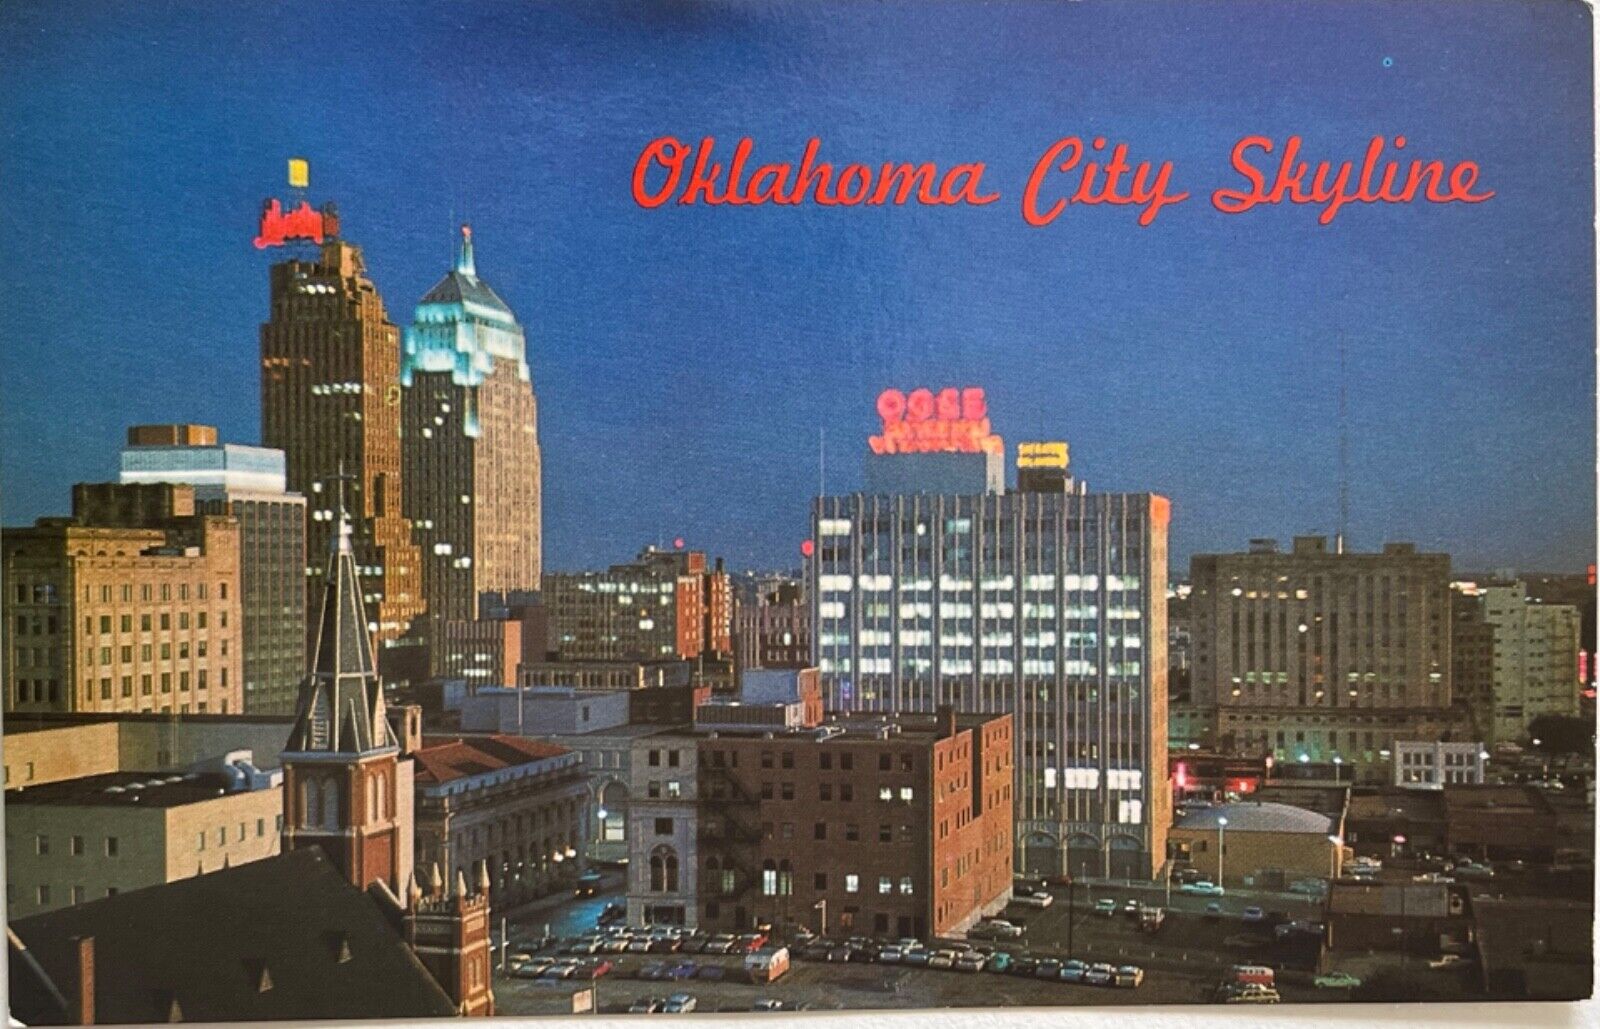 Oklahoma City Skyline at Night Aerial View Postcard c1960